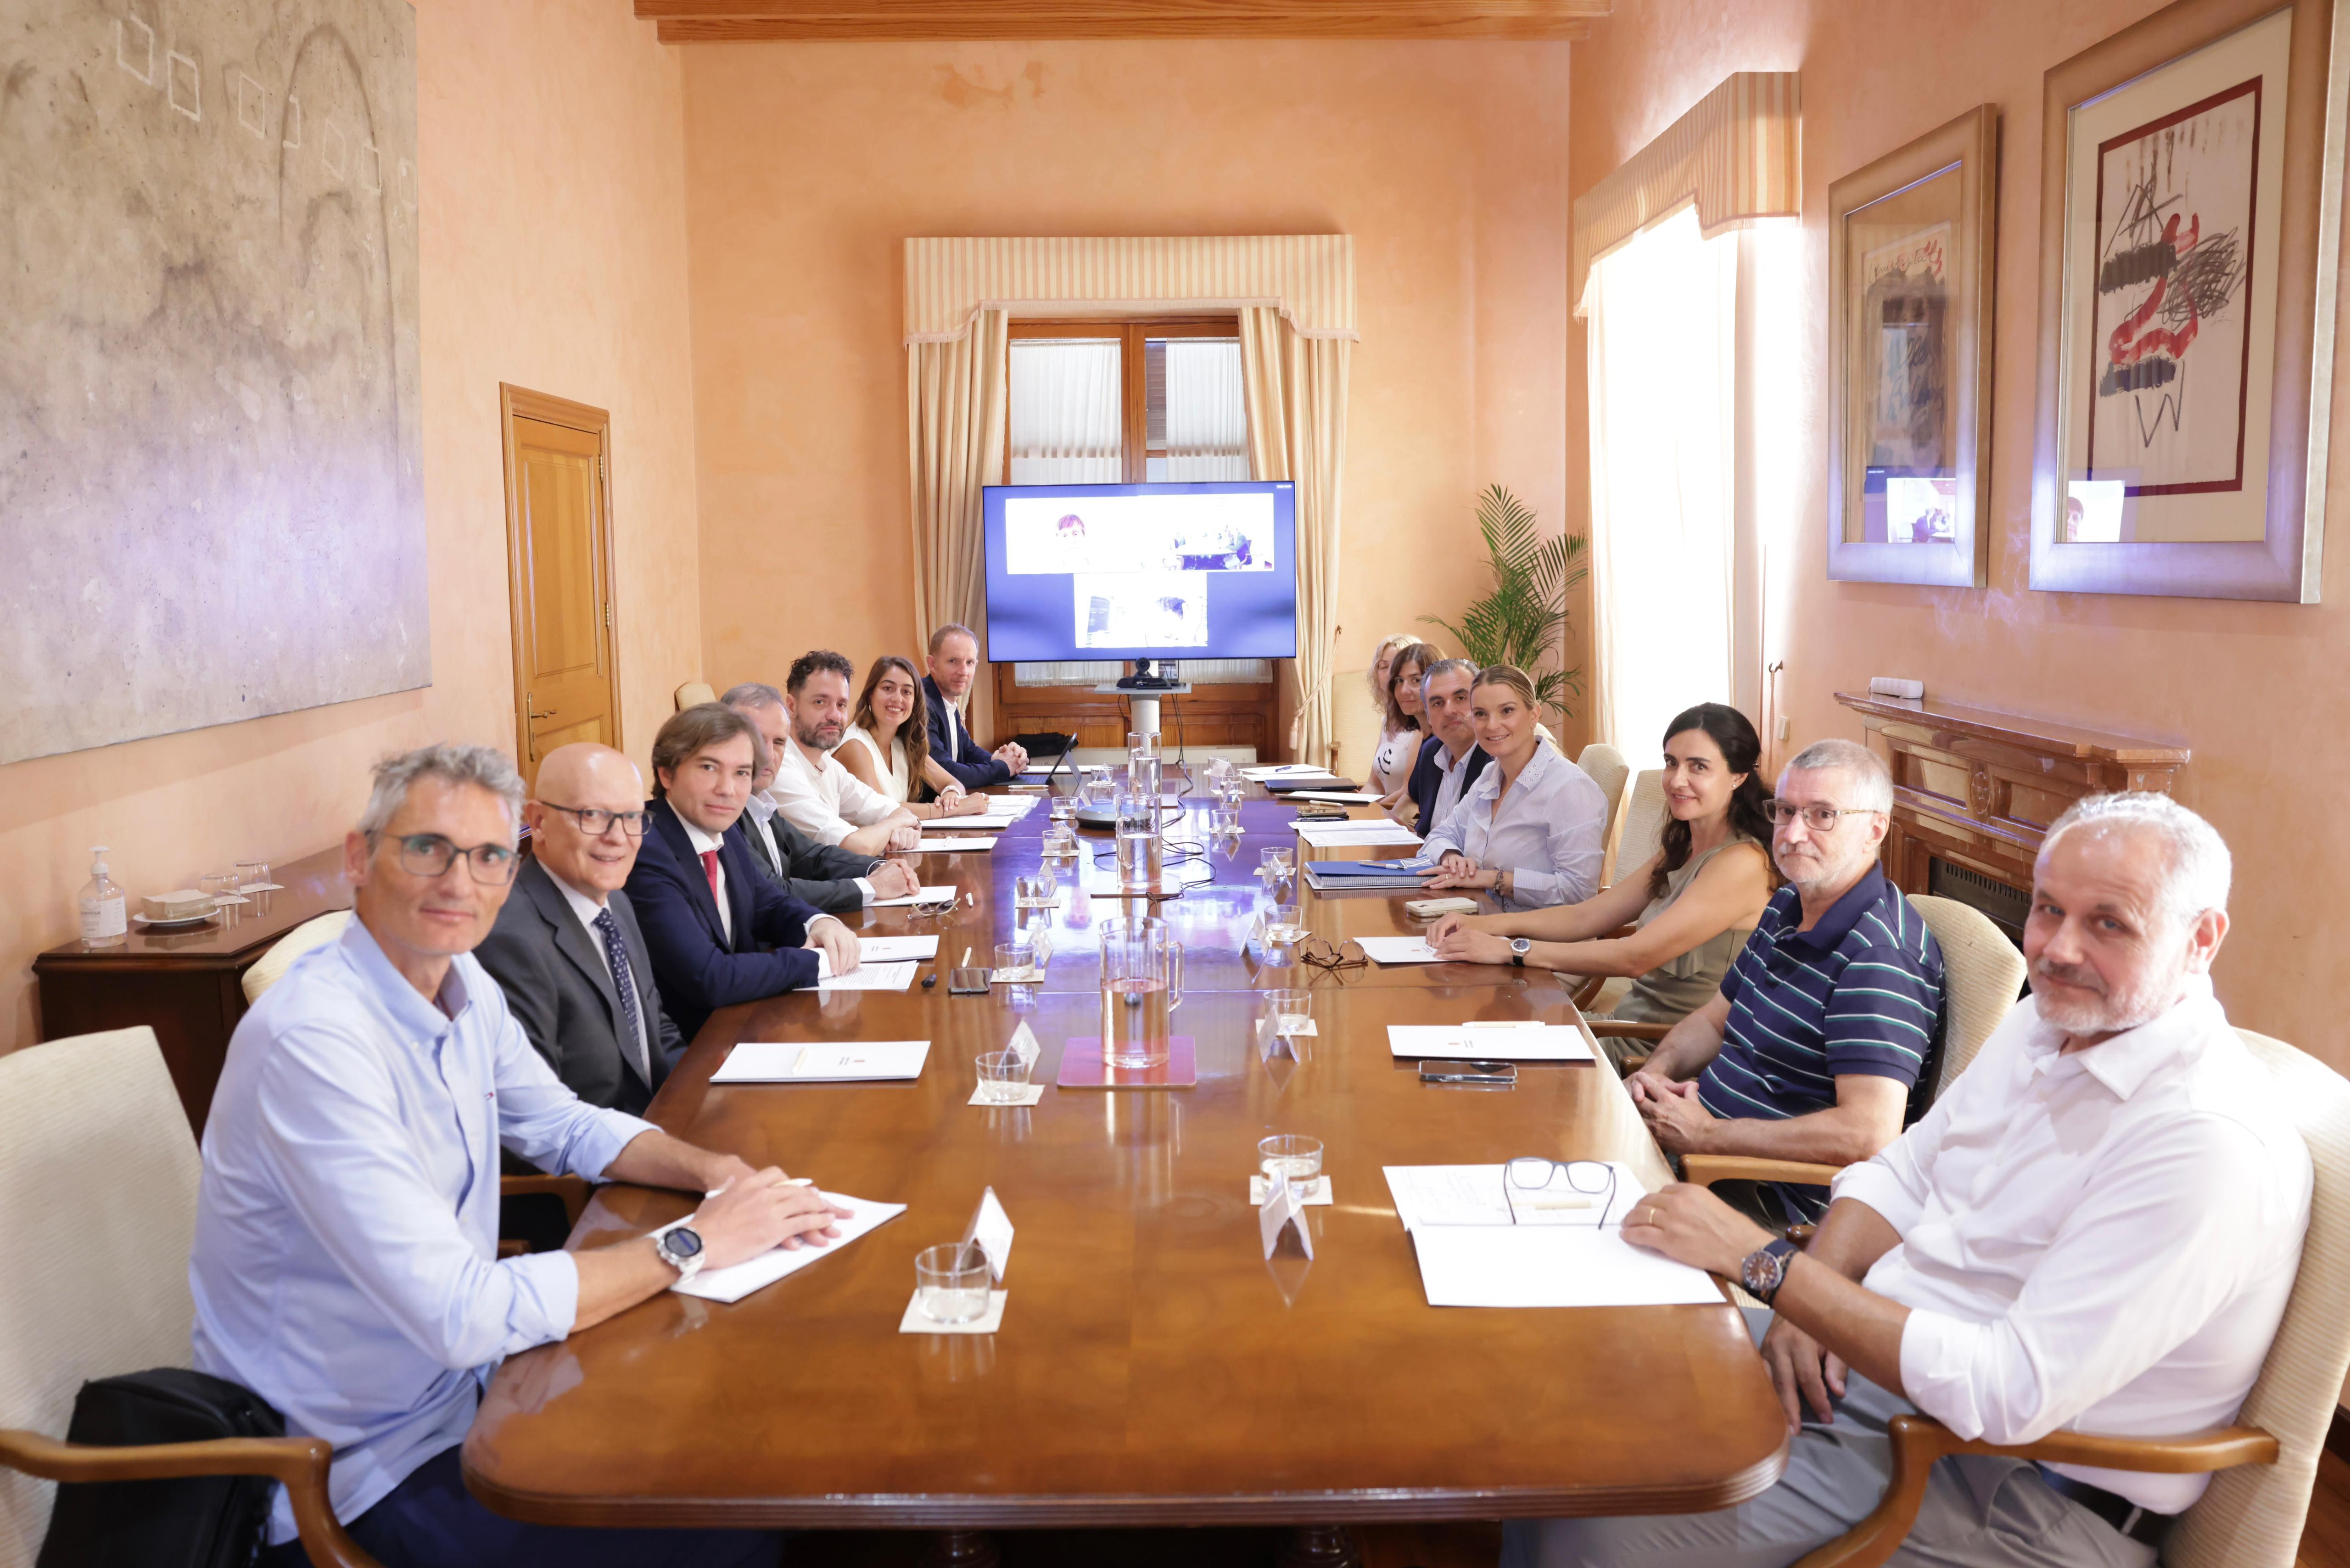 La presidenta Prohens presideix la reunió del Grup per a l’Anàlisi i la Millora del Sistema Educatiu, juntament amb el rector de la Universitat de les Illes Balears, Jaume Carot, i el conseller d’Educació i Universitats, Antoni Vera.